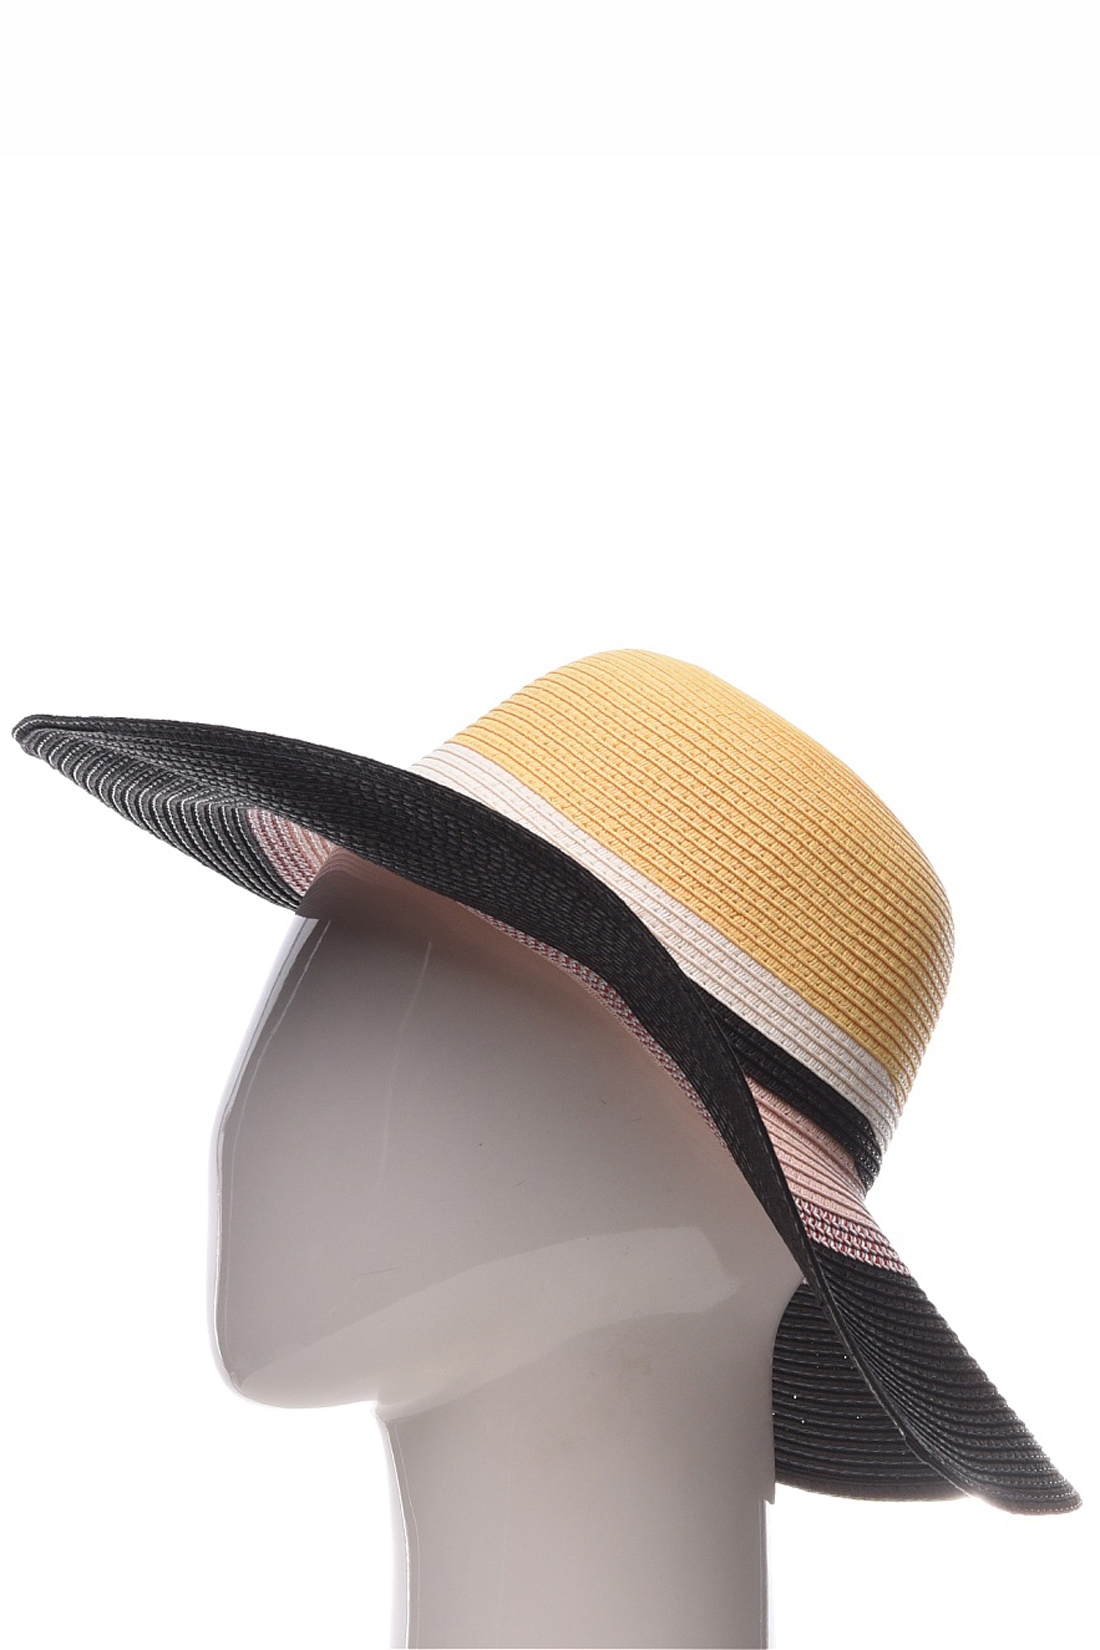 Шляпа с широкими полосами (арт. baon B349002), размер Б/р 56, цвет multicolor#многоцветный Шляпа с широкими полосами (арт. baon B349002) - фото 5